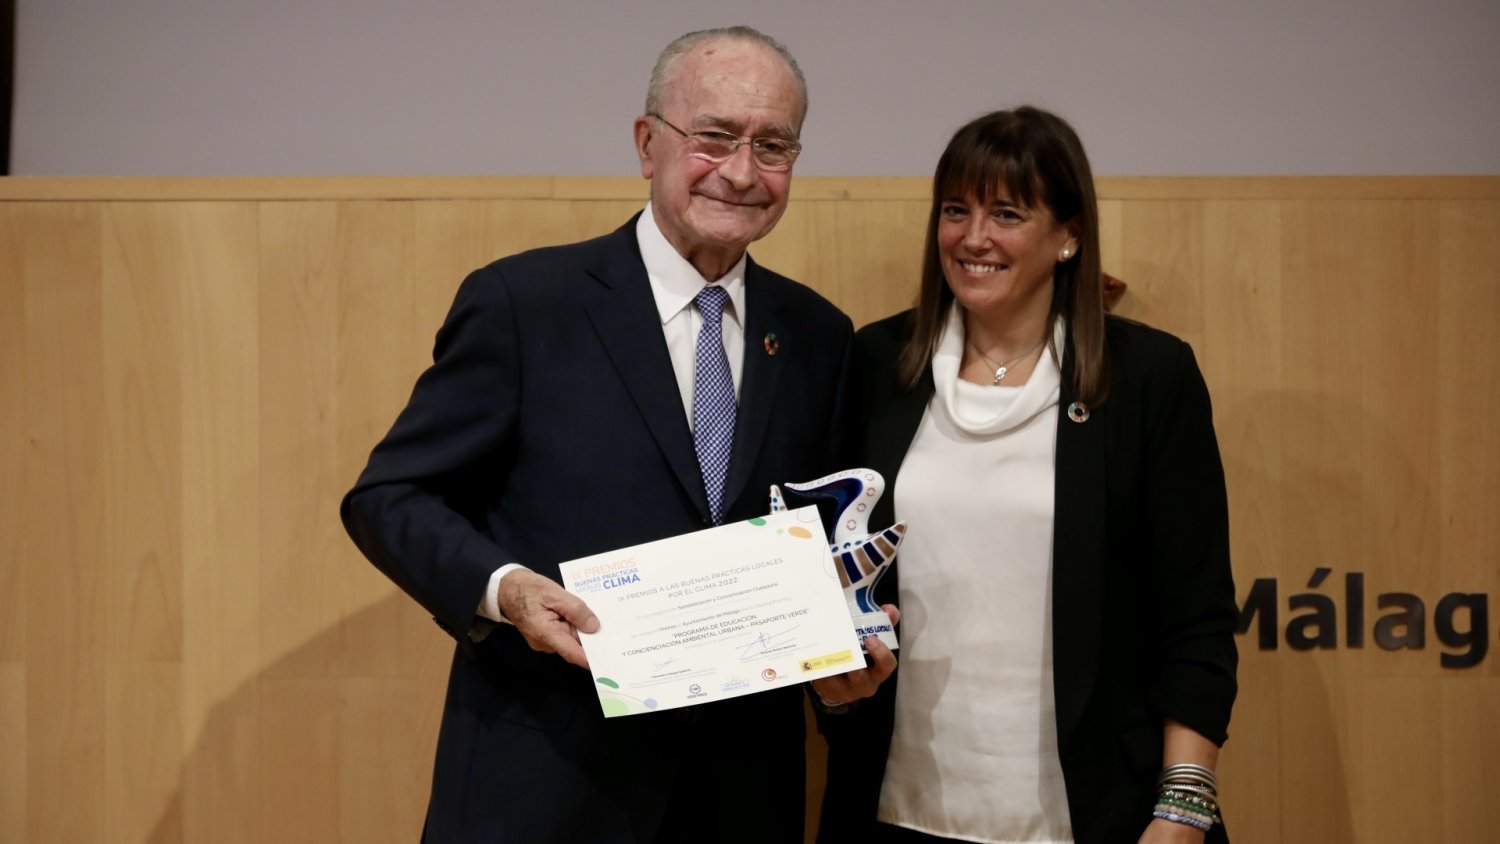 Málaga recibe el 'Premio a las Buenas Prácticas por el Clima' por su trabajo en el programa Pasaporte Verde